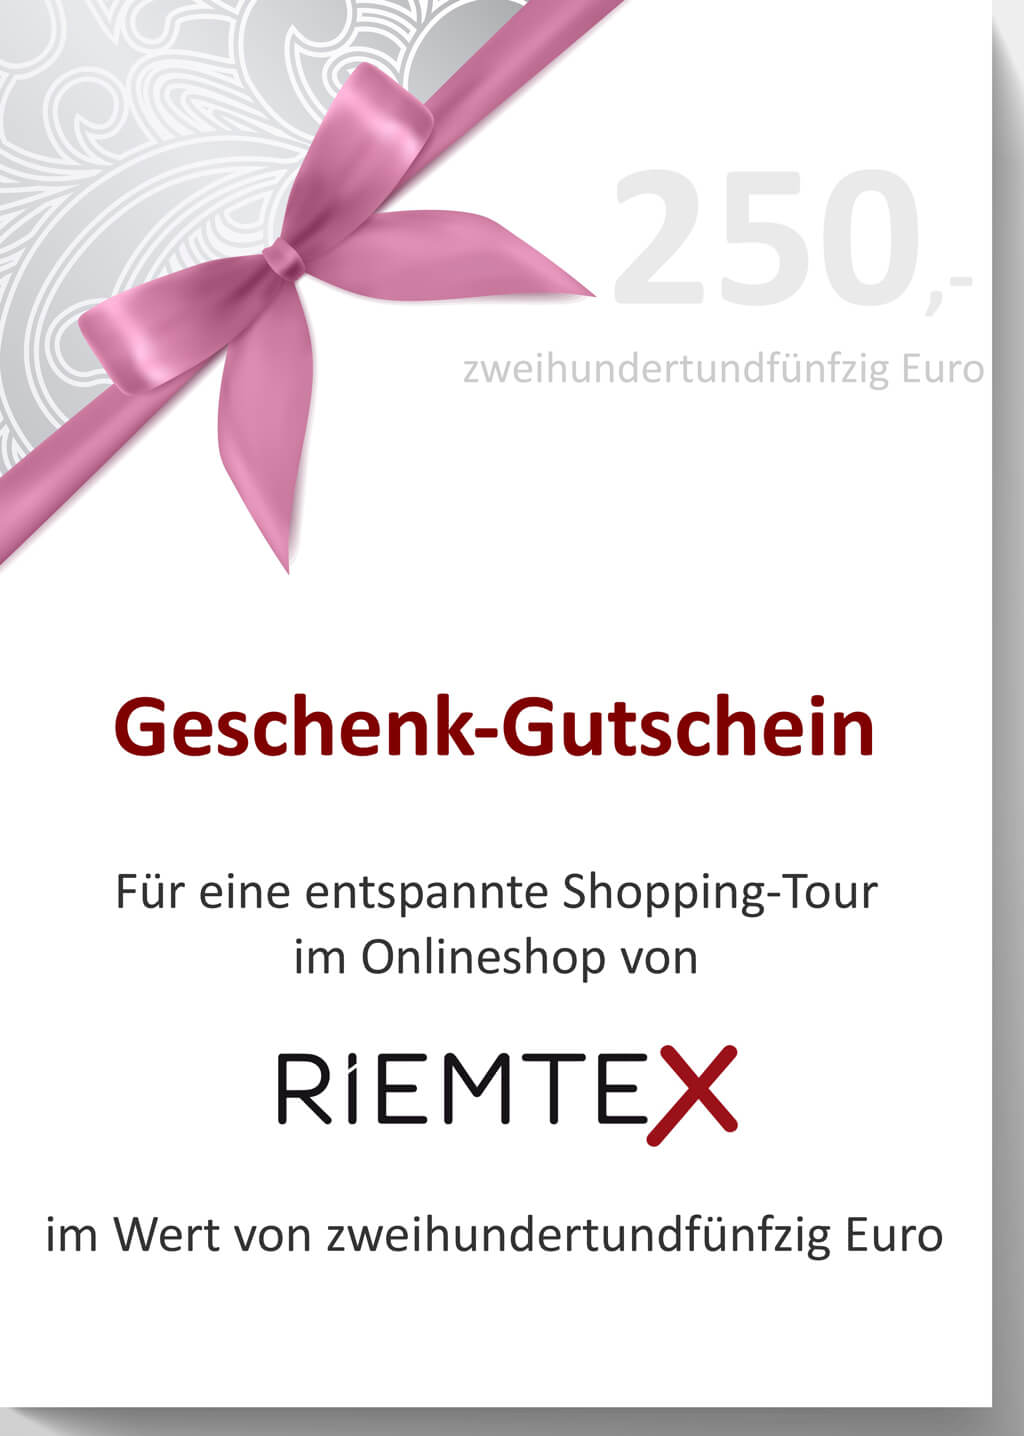 RIEMTEX Geschenk Gutscheine im Wert von 250 Euro